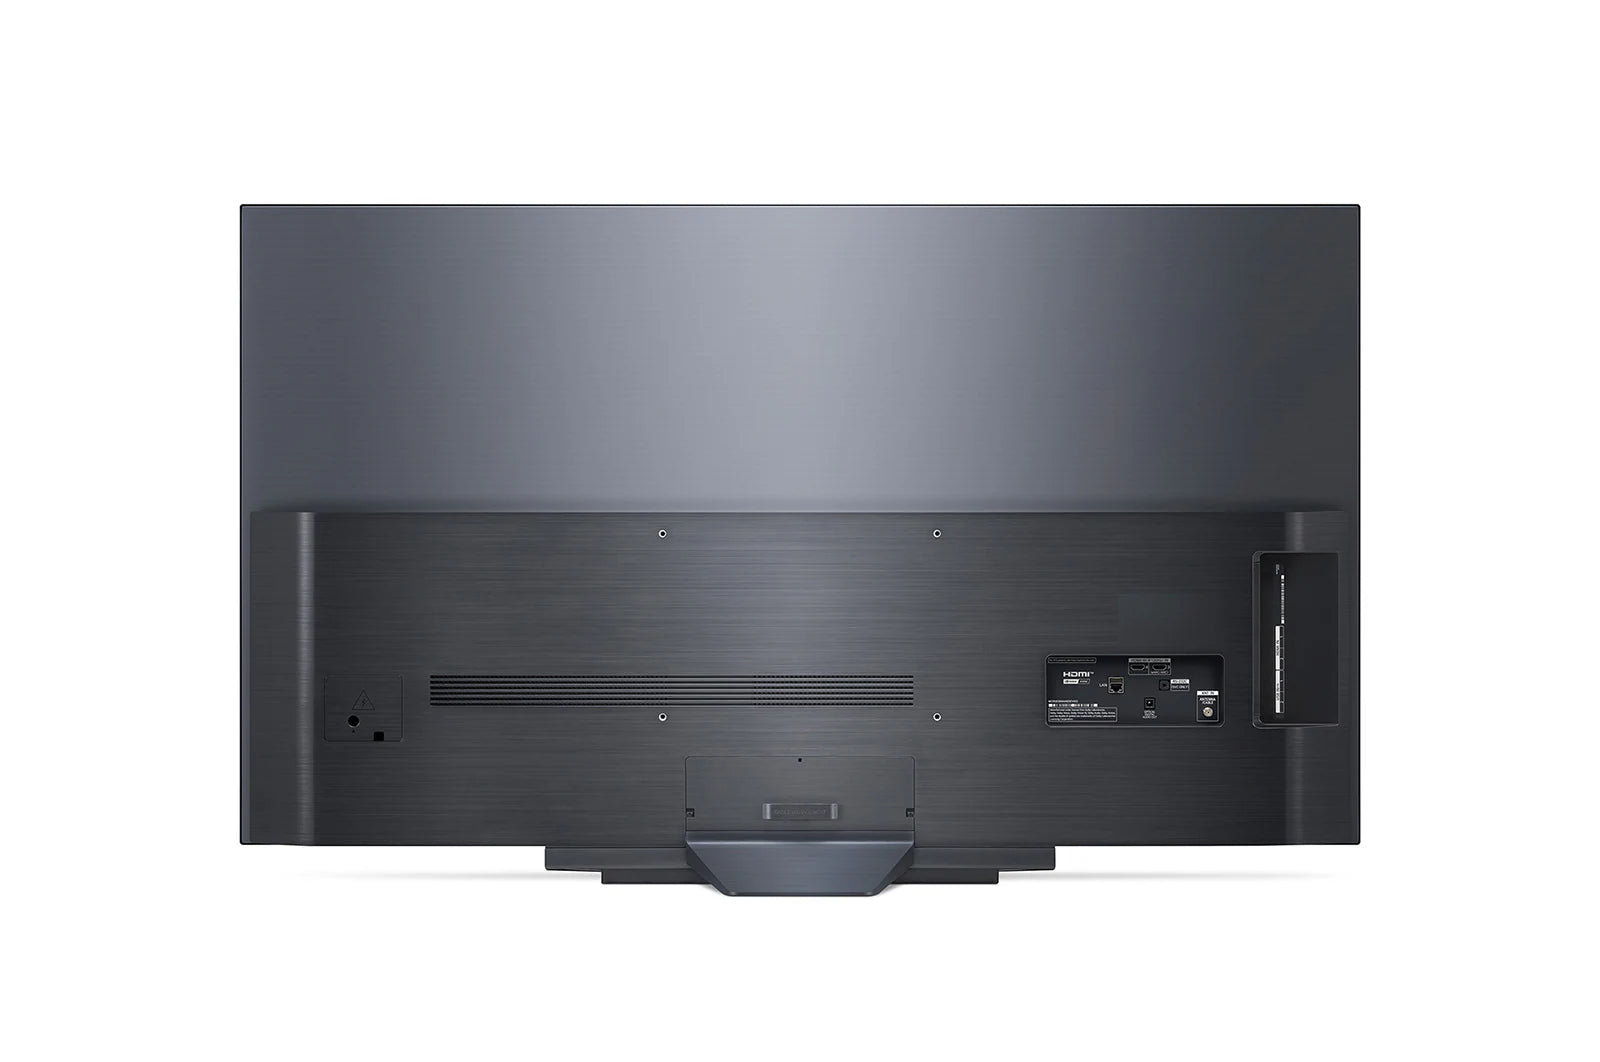 LG 樂金 B3 4K OLED 智能電視